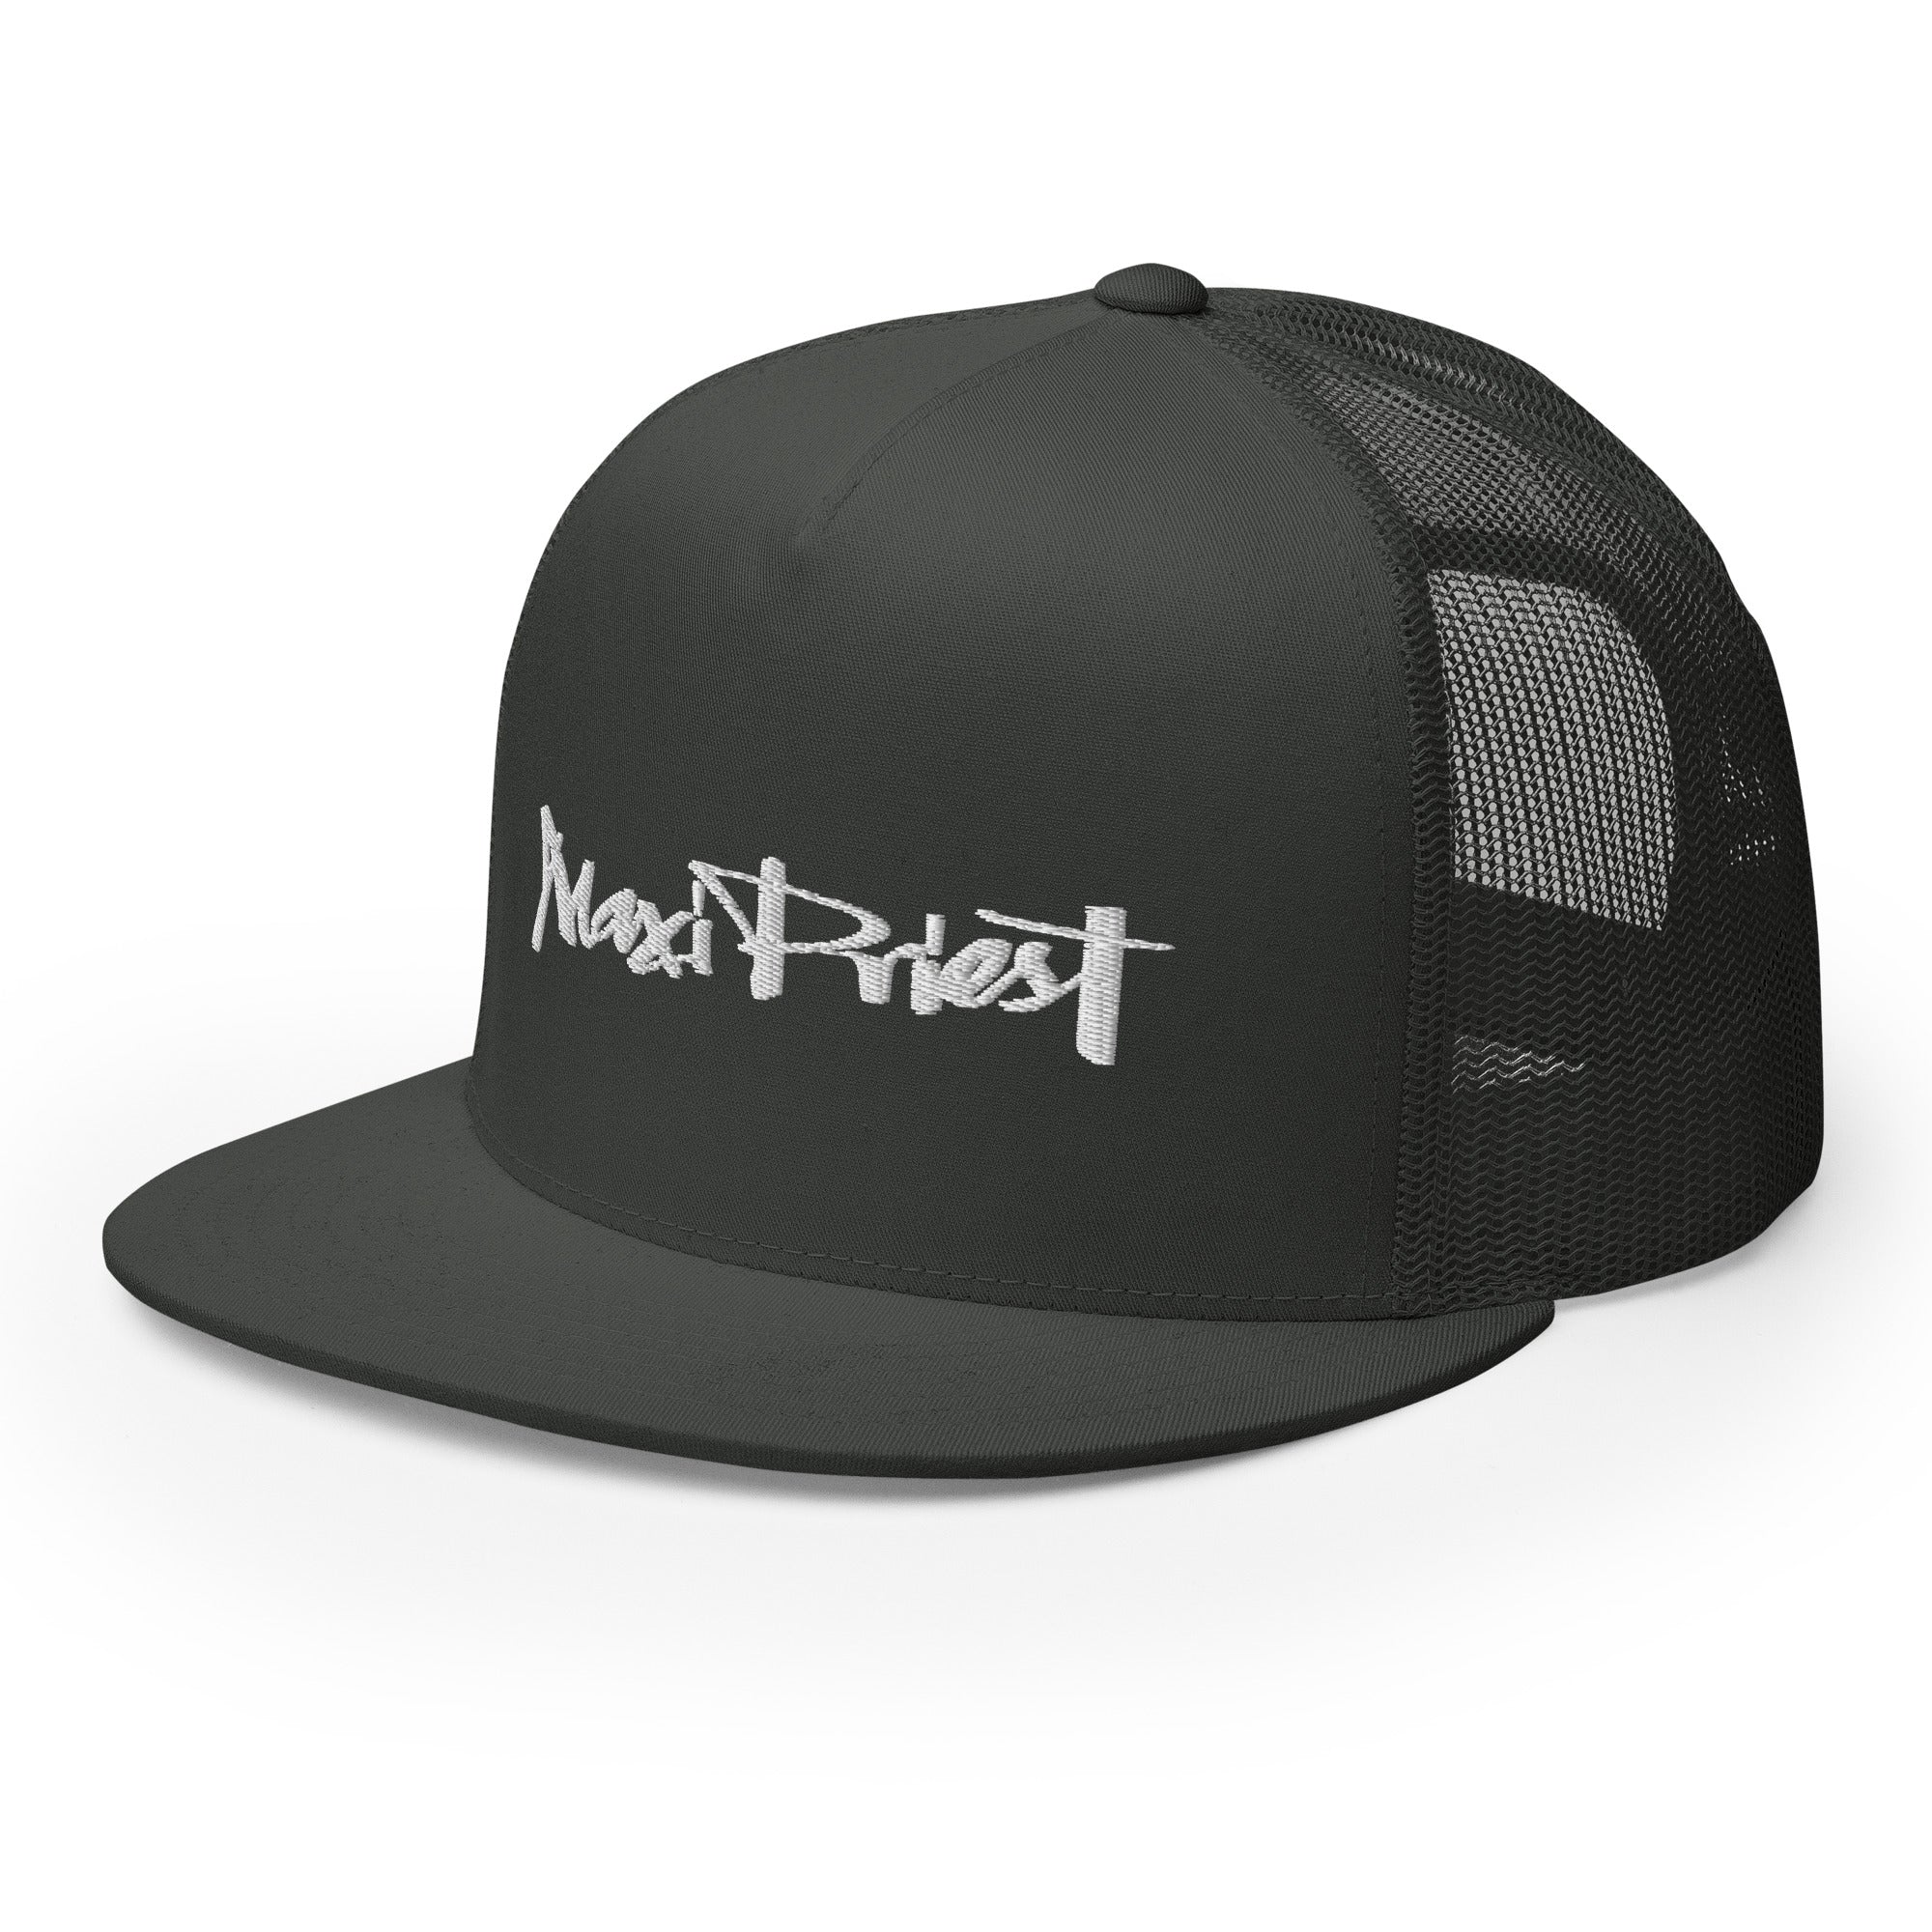 Maxi Priest - Trucker Cap